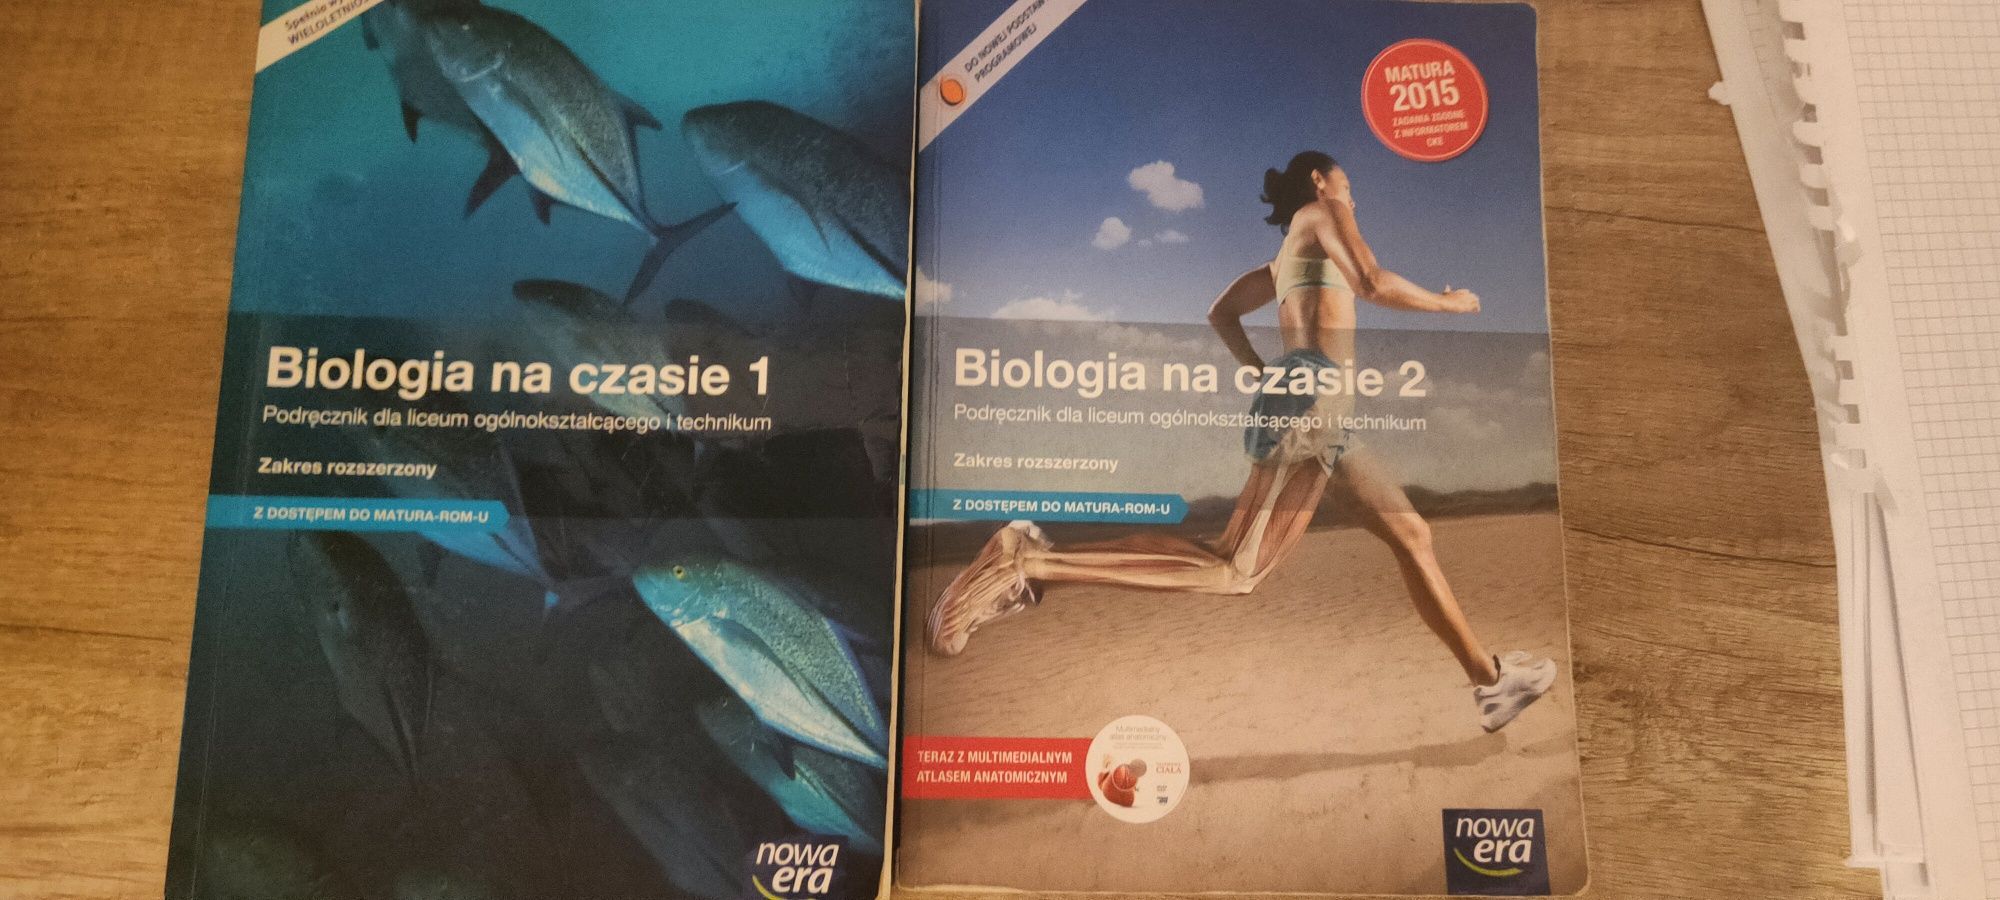 Podręczniki Biologia na czasie 1 i 2 rozszerzony matura